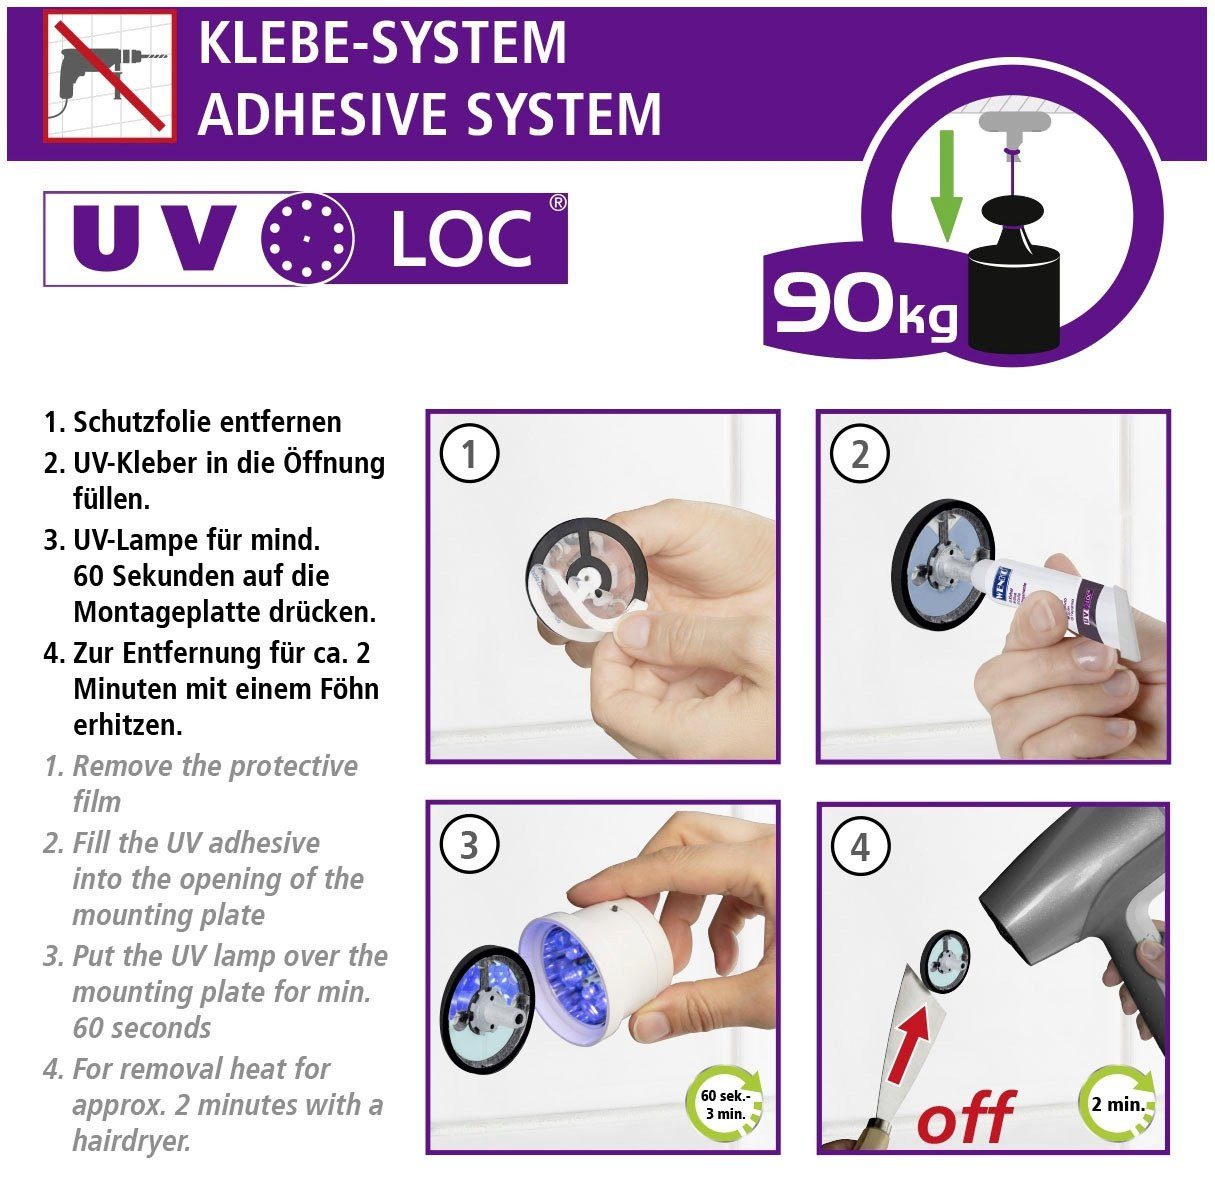 WENKO Toilettenpapierhalter UV-Loc® Udine, Befestigen Bohren ohne